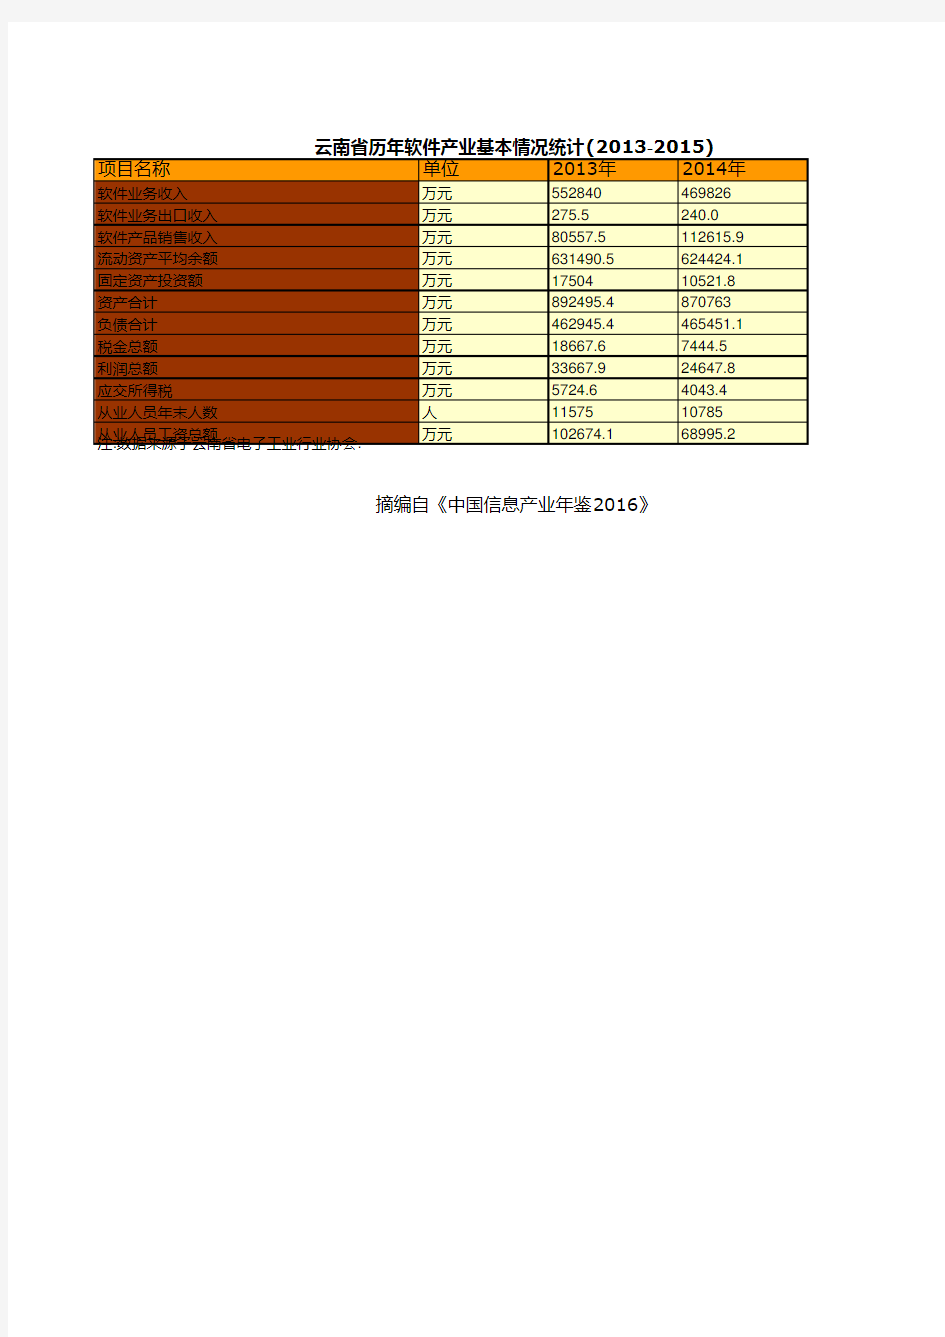 中国信息产业年鉴2016：云南省历年软件产业基本情况统计(2013-2015)